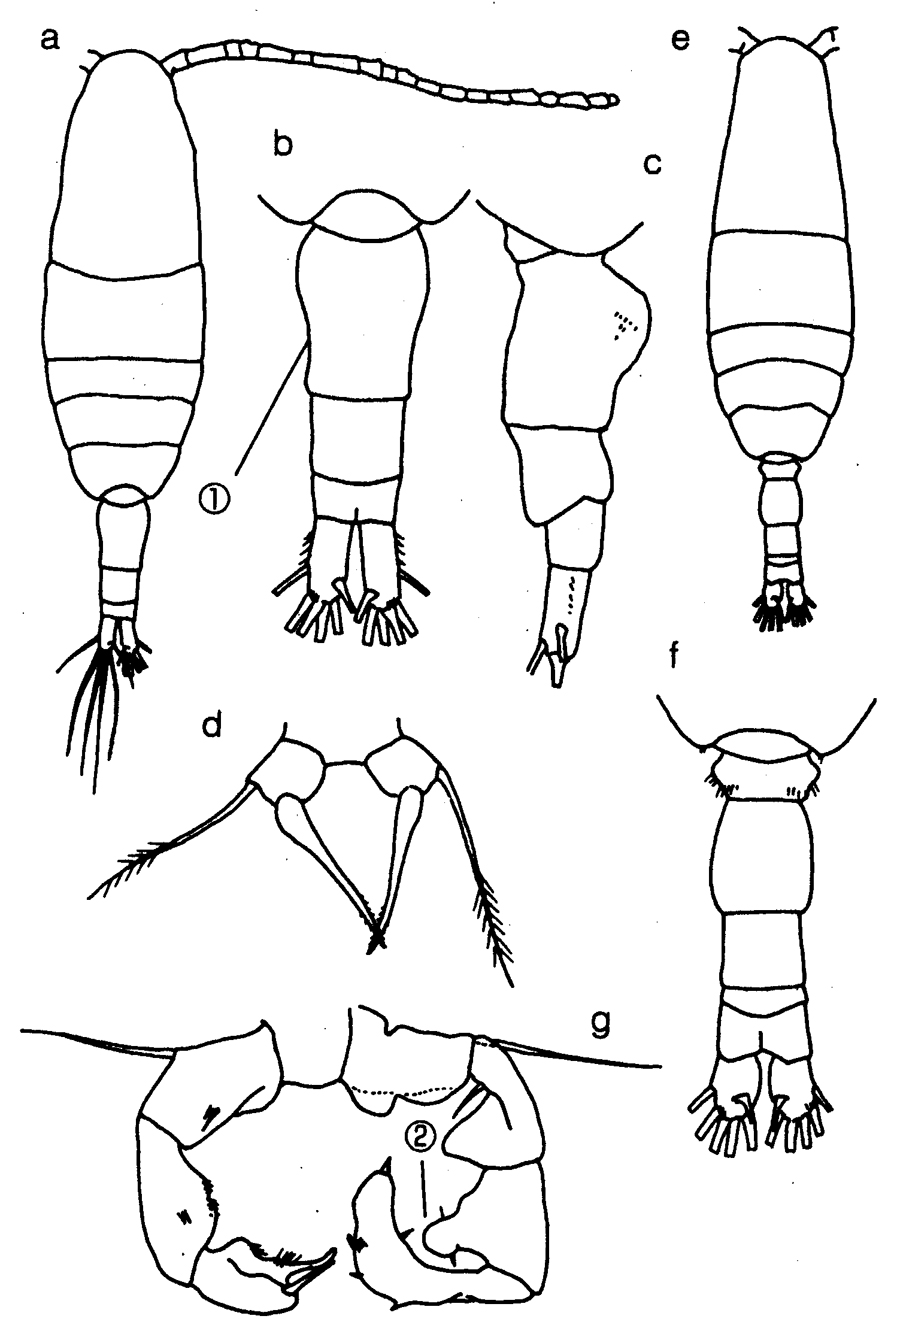 Species Acartia (Acartiura) hudsonica - Plate 17 of morphological figures